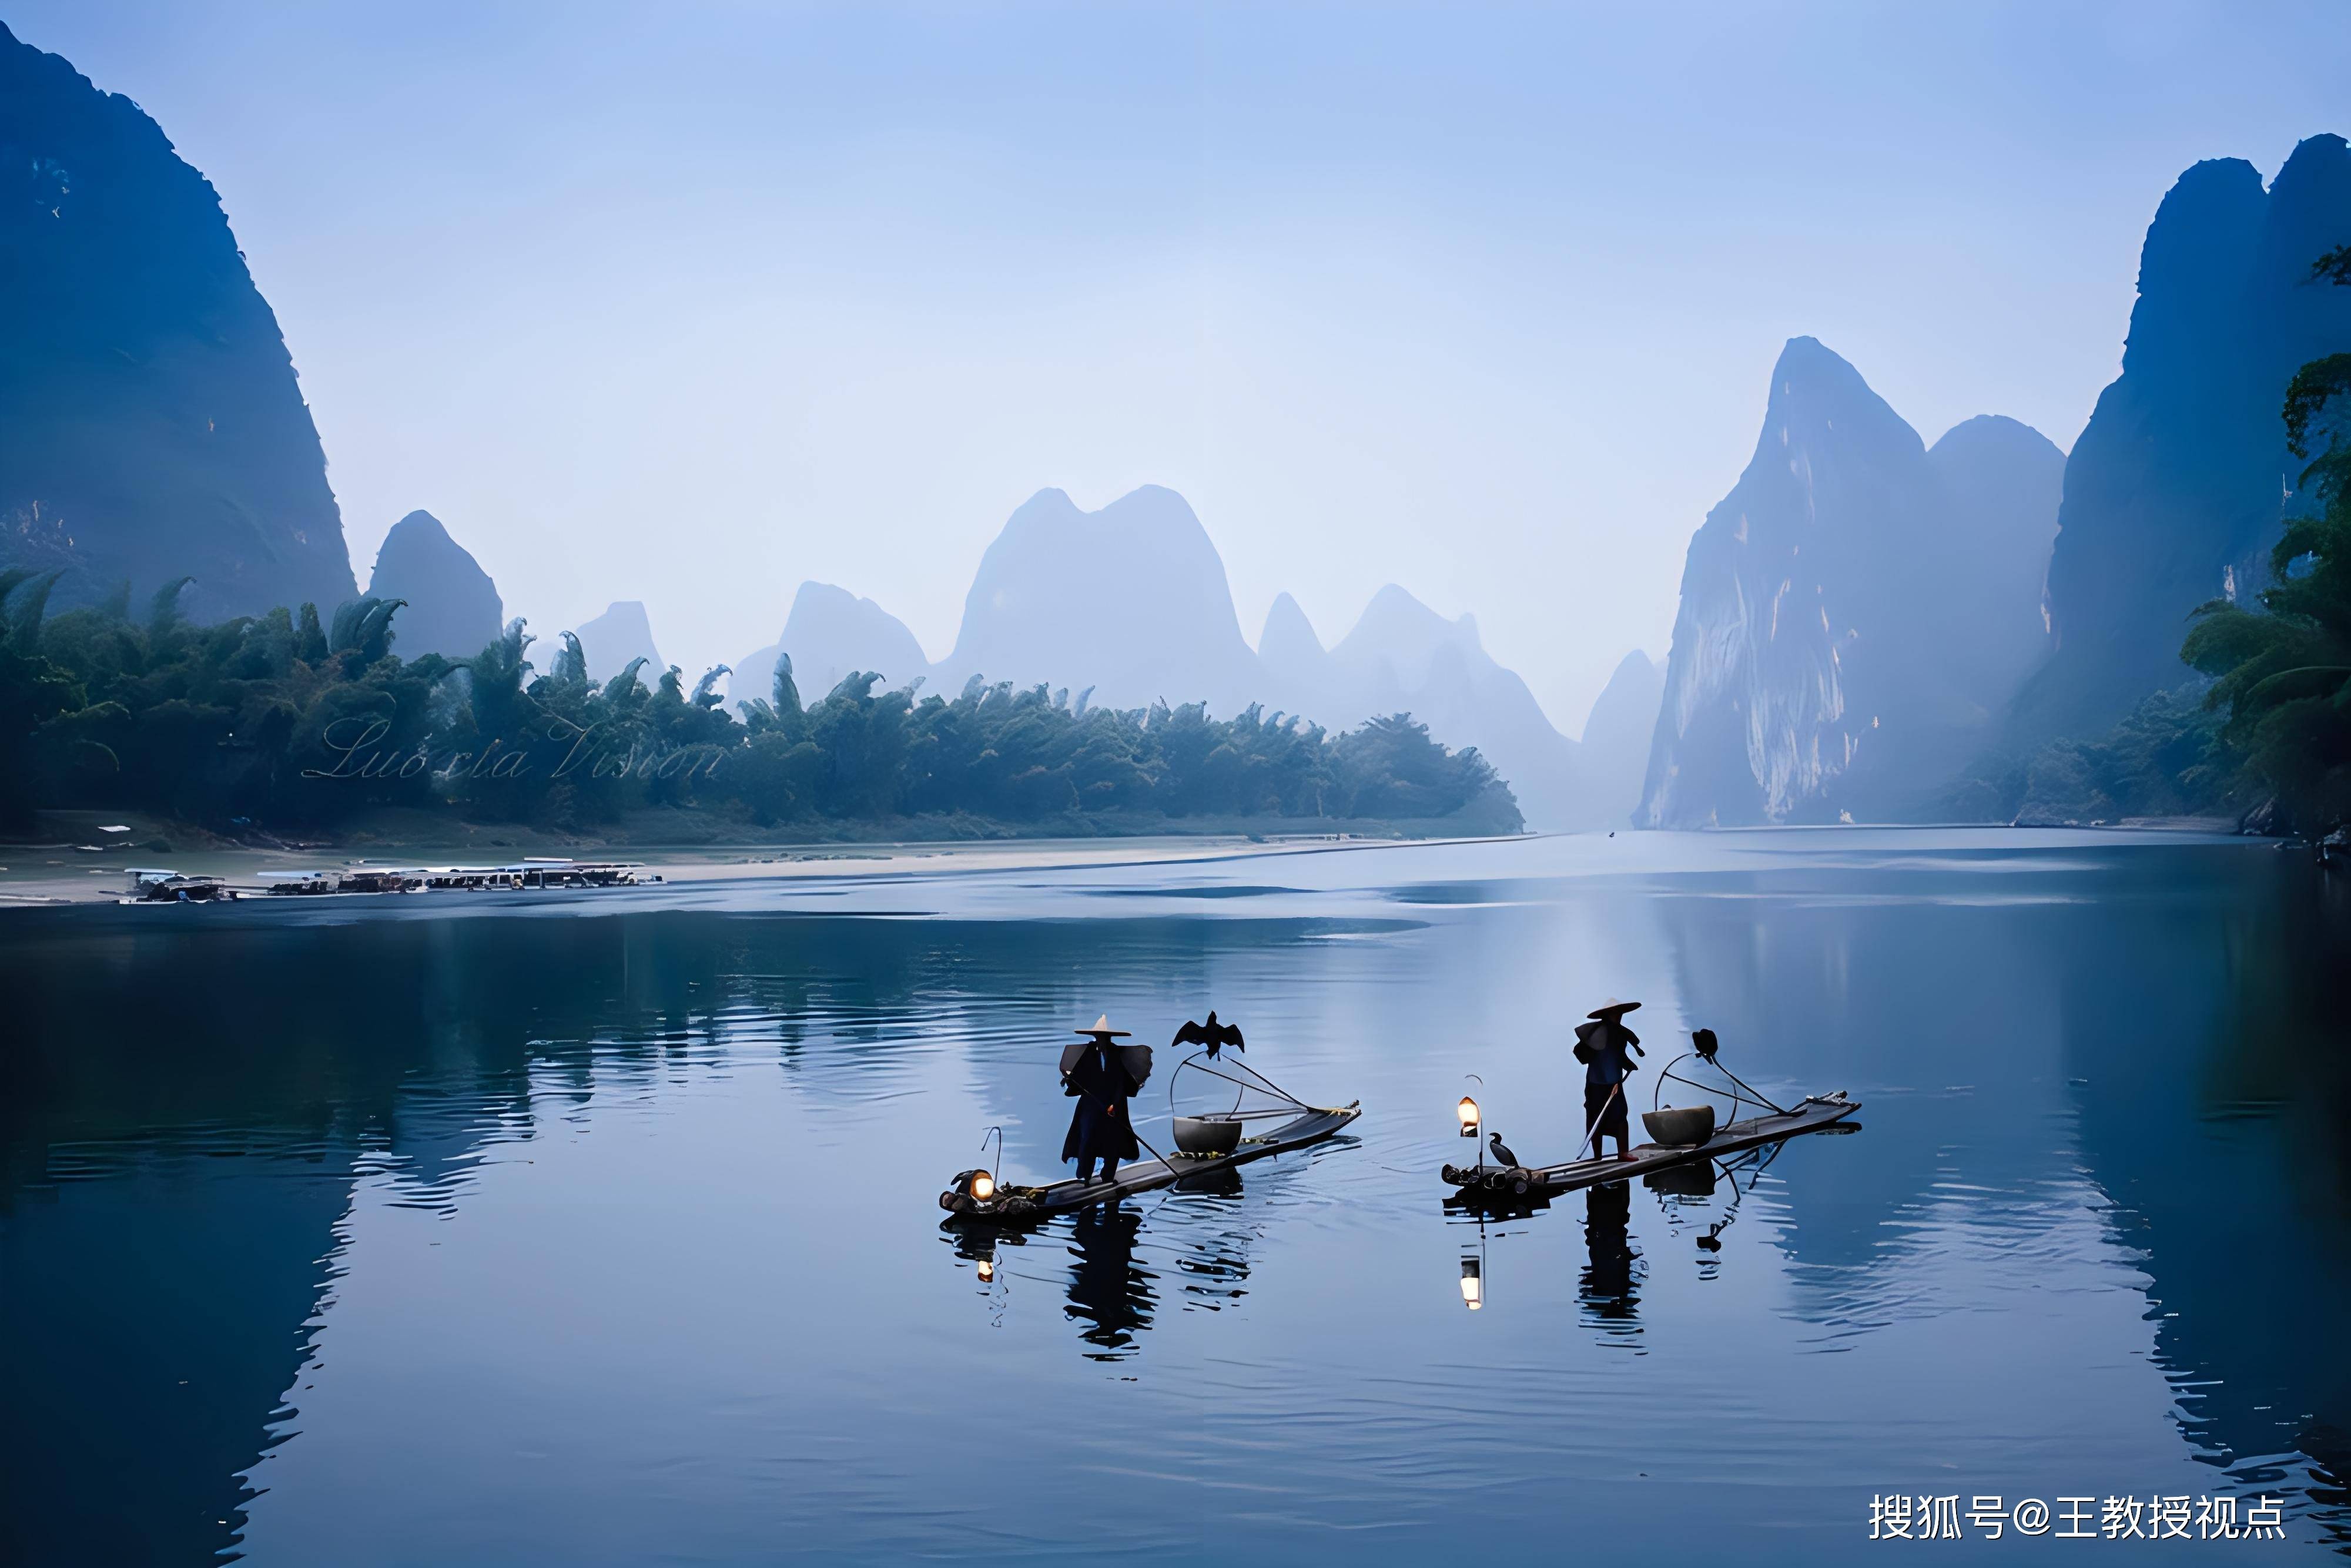 桂林山水:自然之美,人文之韵与科学的探索